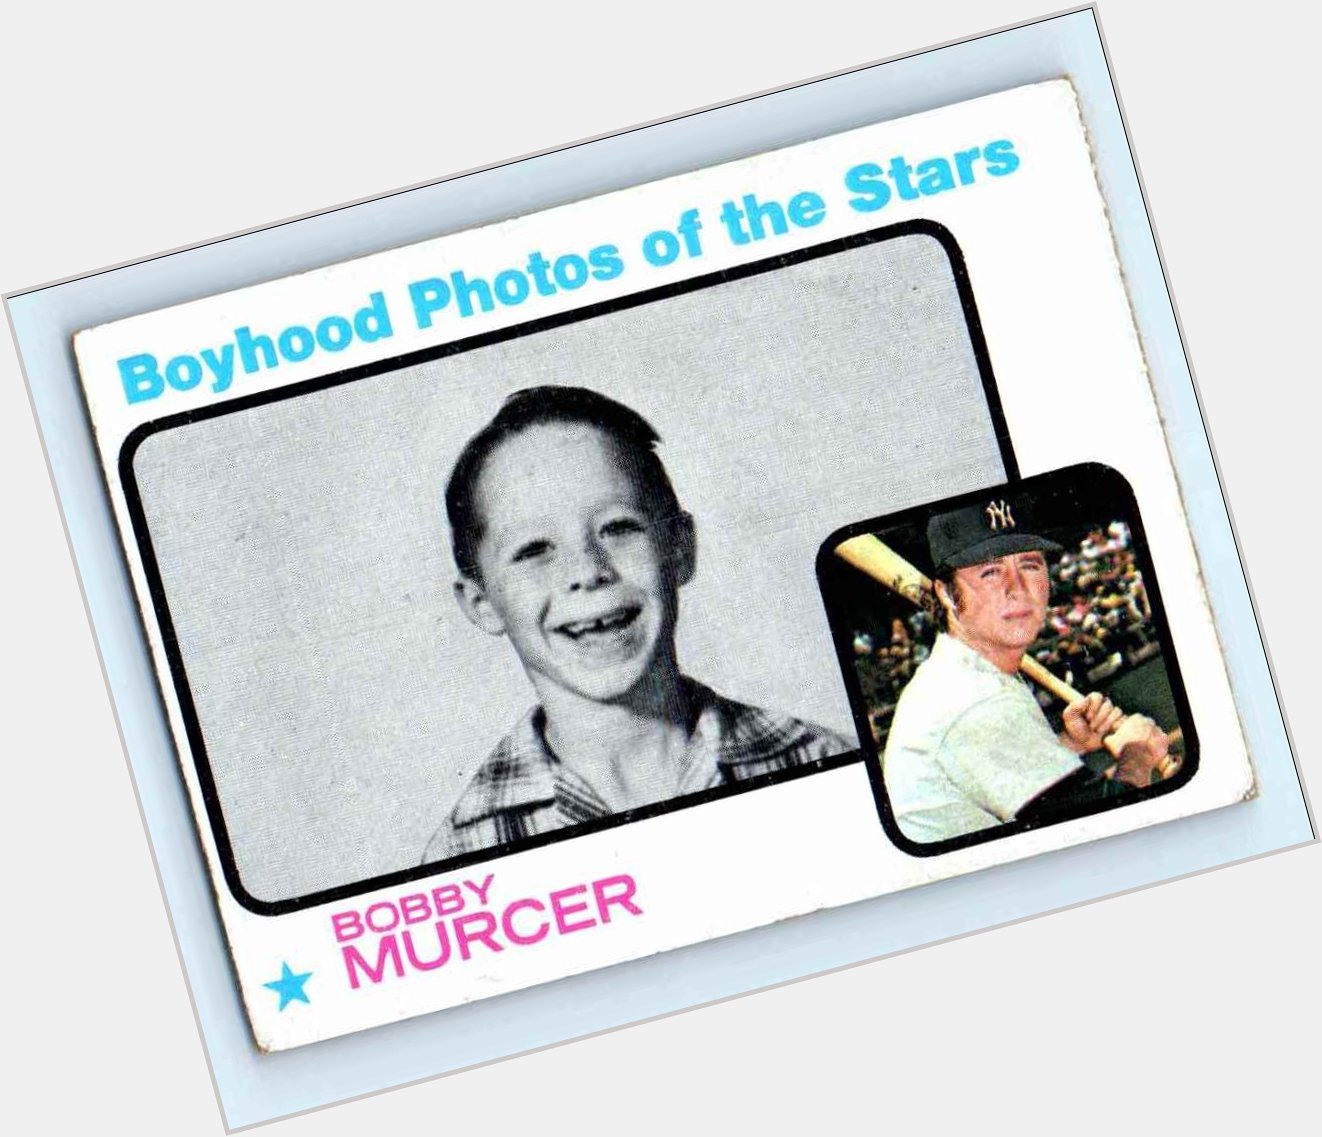 Happy birthday Bobby Murcer - RIP in Yankee heaven! 